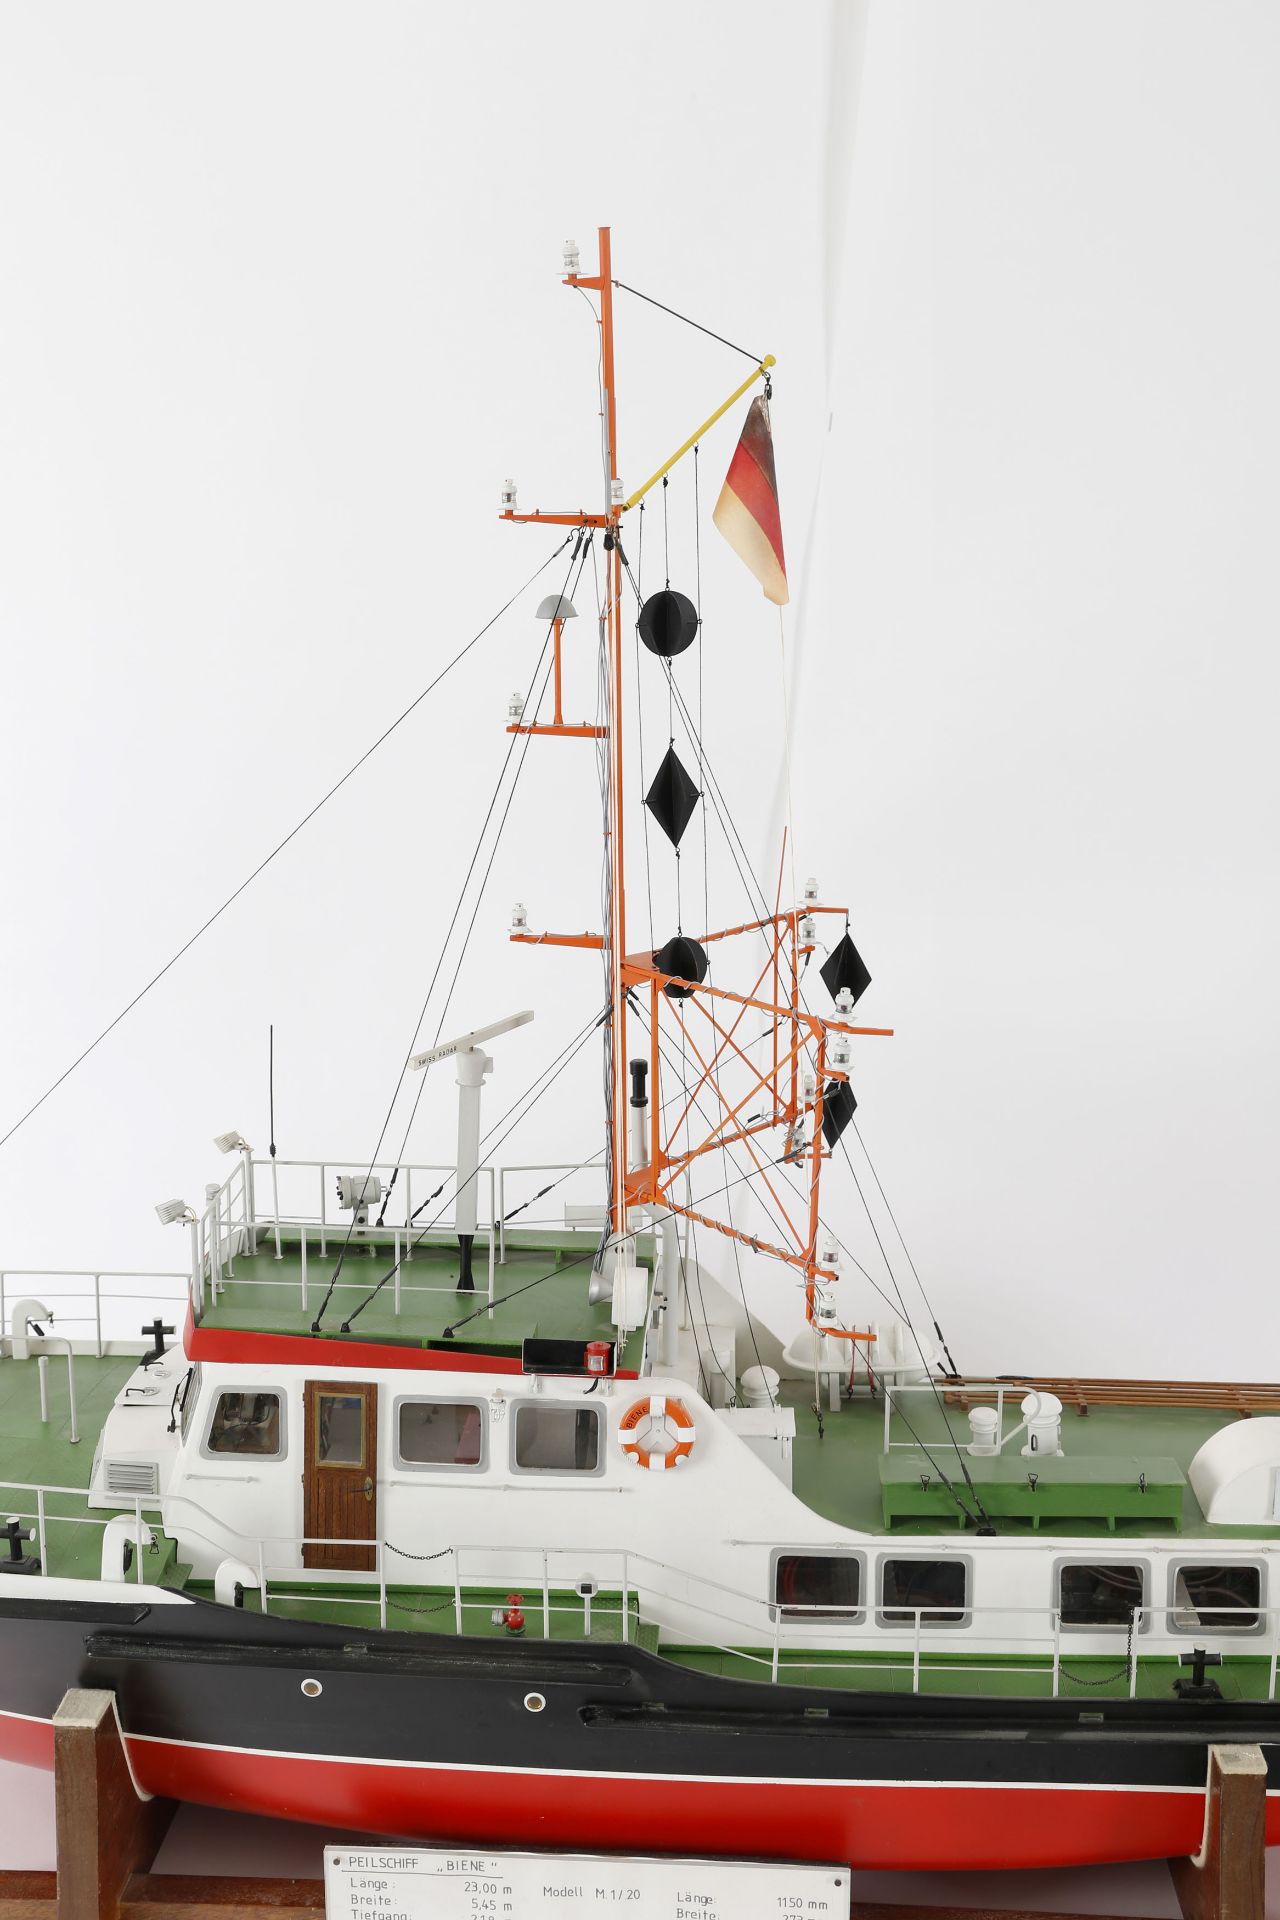 Modell des Peilschiffs 'Biene' - Image 4 of 7